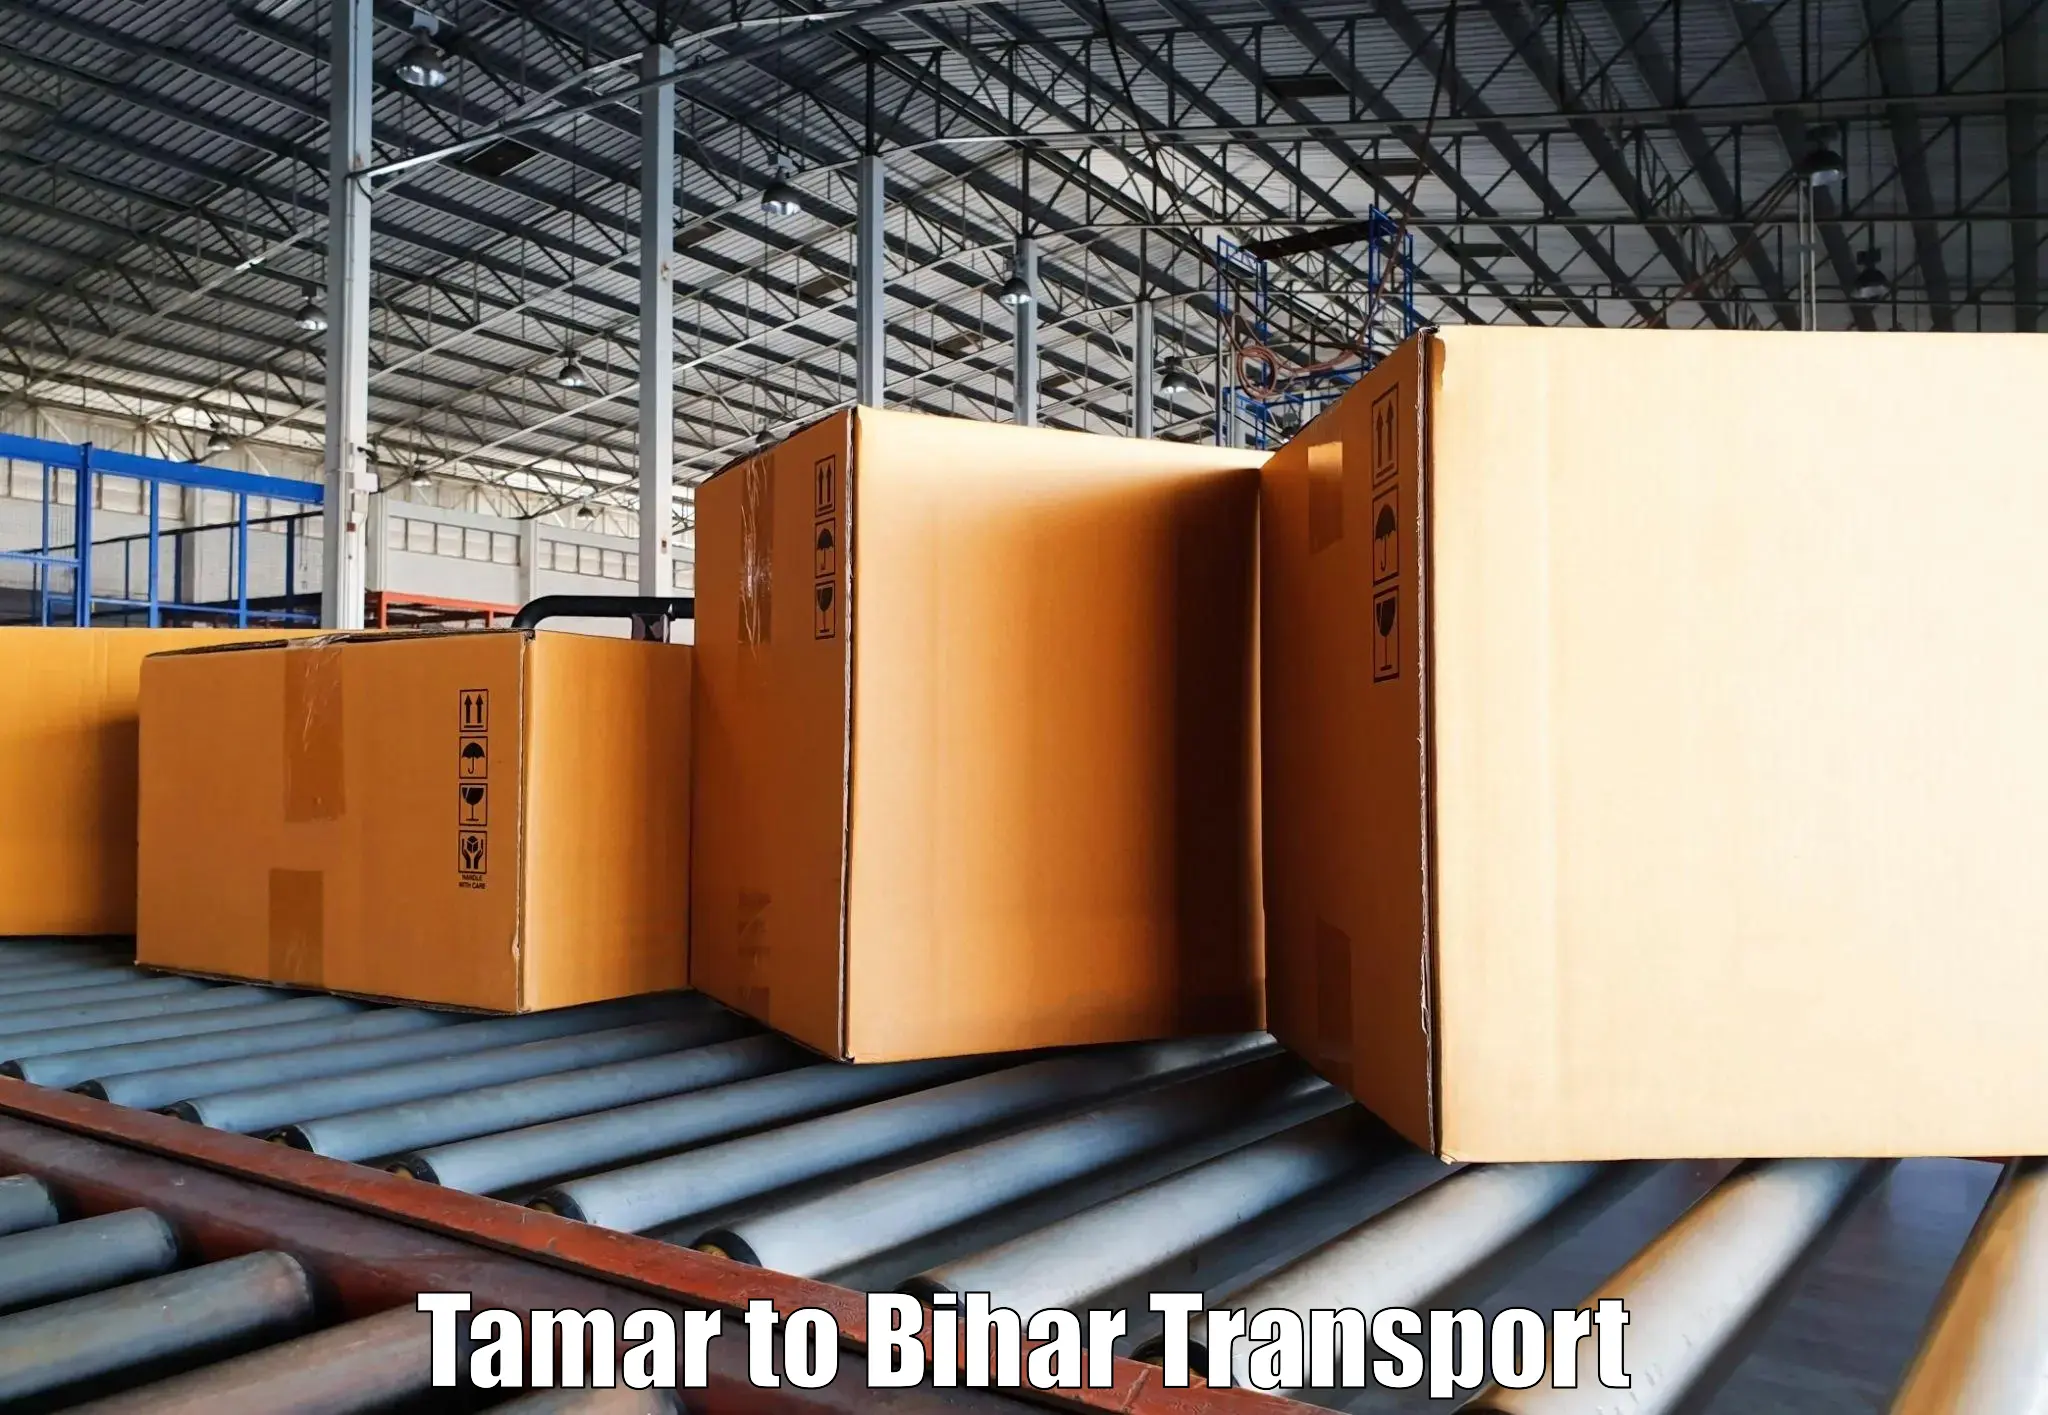 Bike shifting service Tamar to Bihar